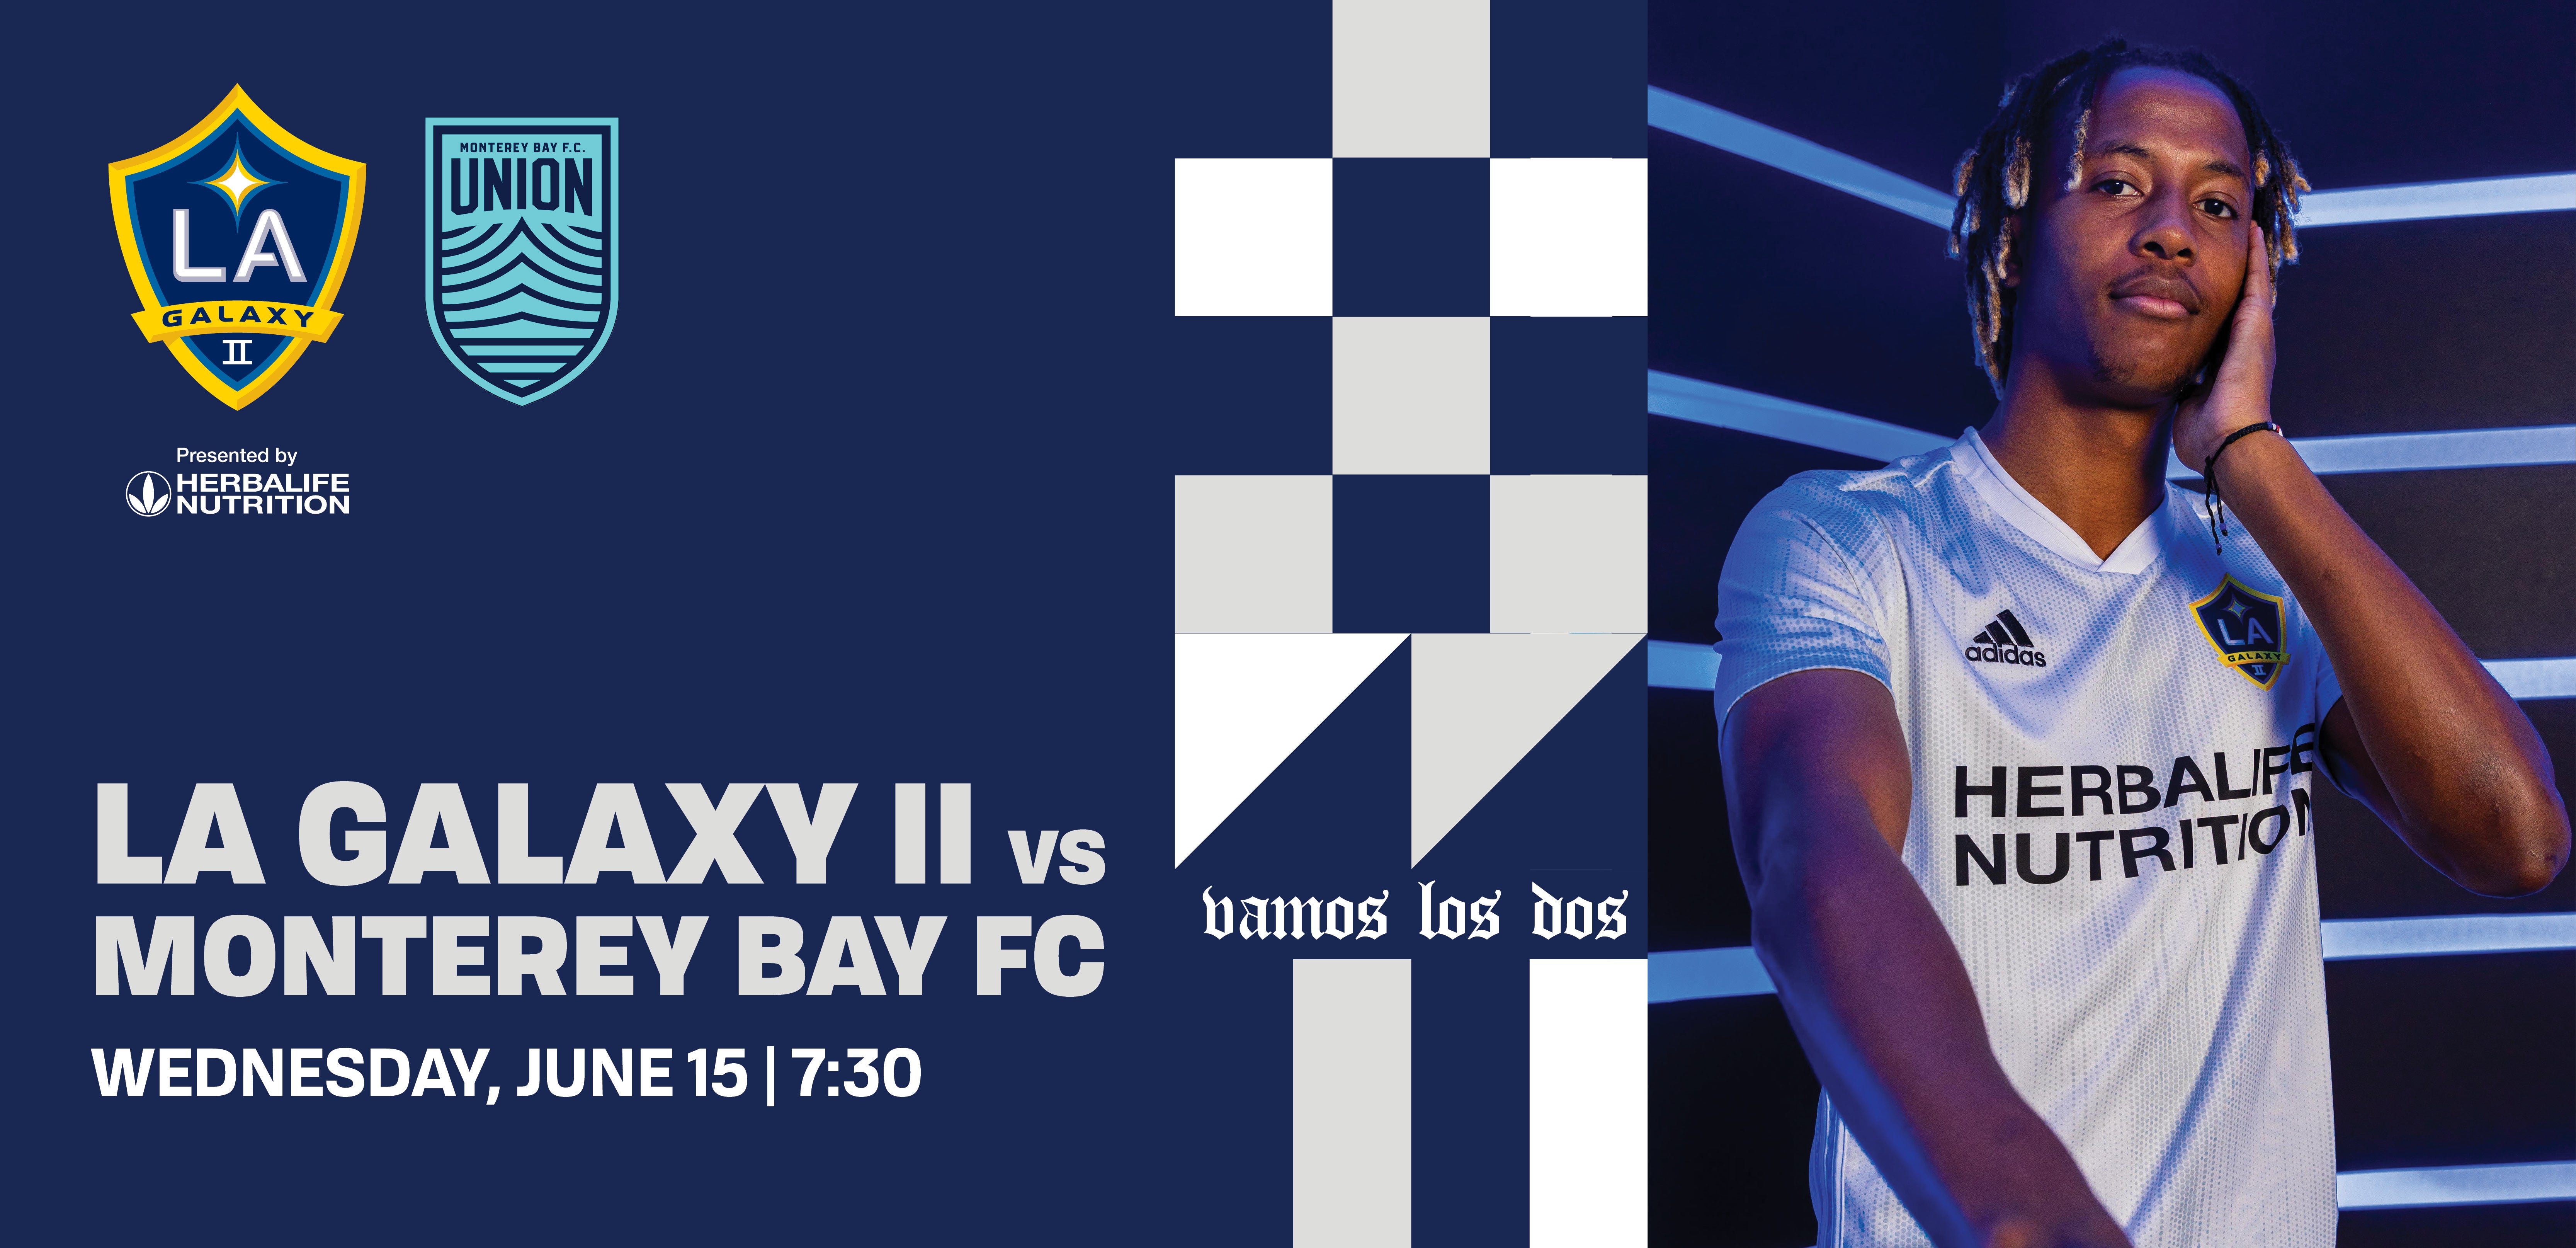 LA Galaxy II vs Monterey Bay FC